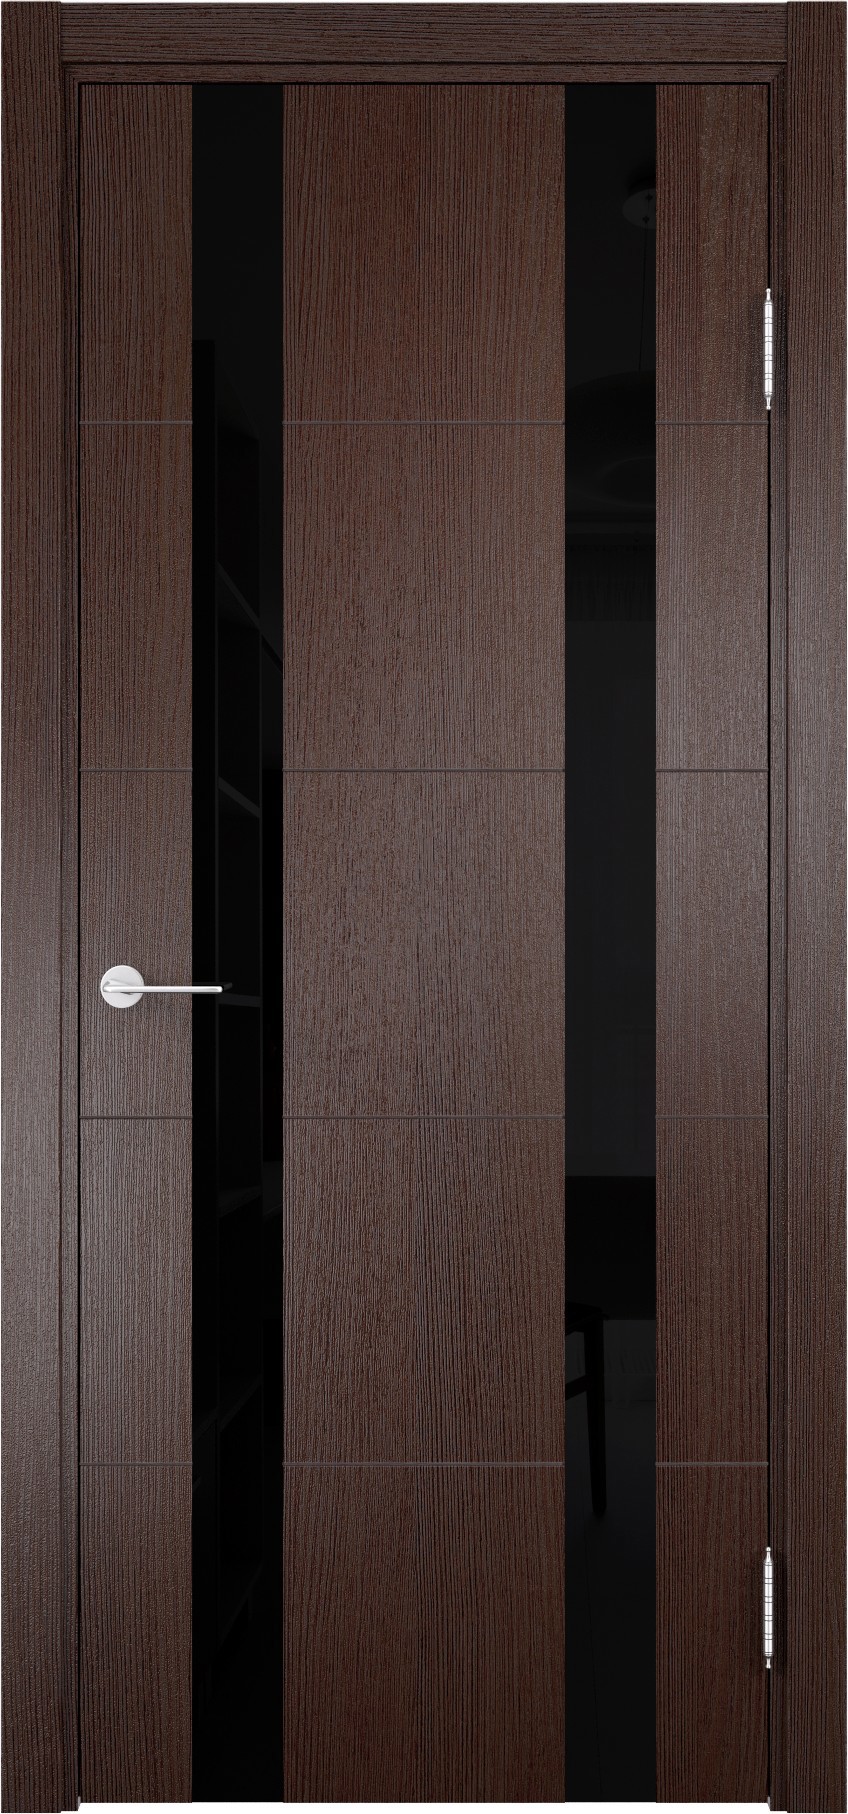 93718163 Дверь межкомнатная Турин (06) остекленная полипропилен цвет дуб графит вералинга 200 x 90 см STLM-0554439 CASAPORTE